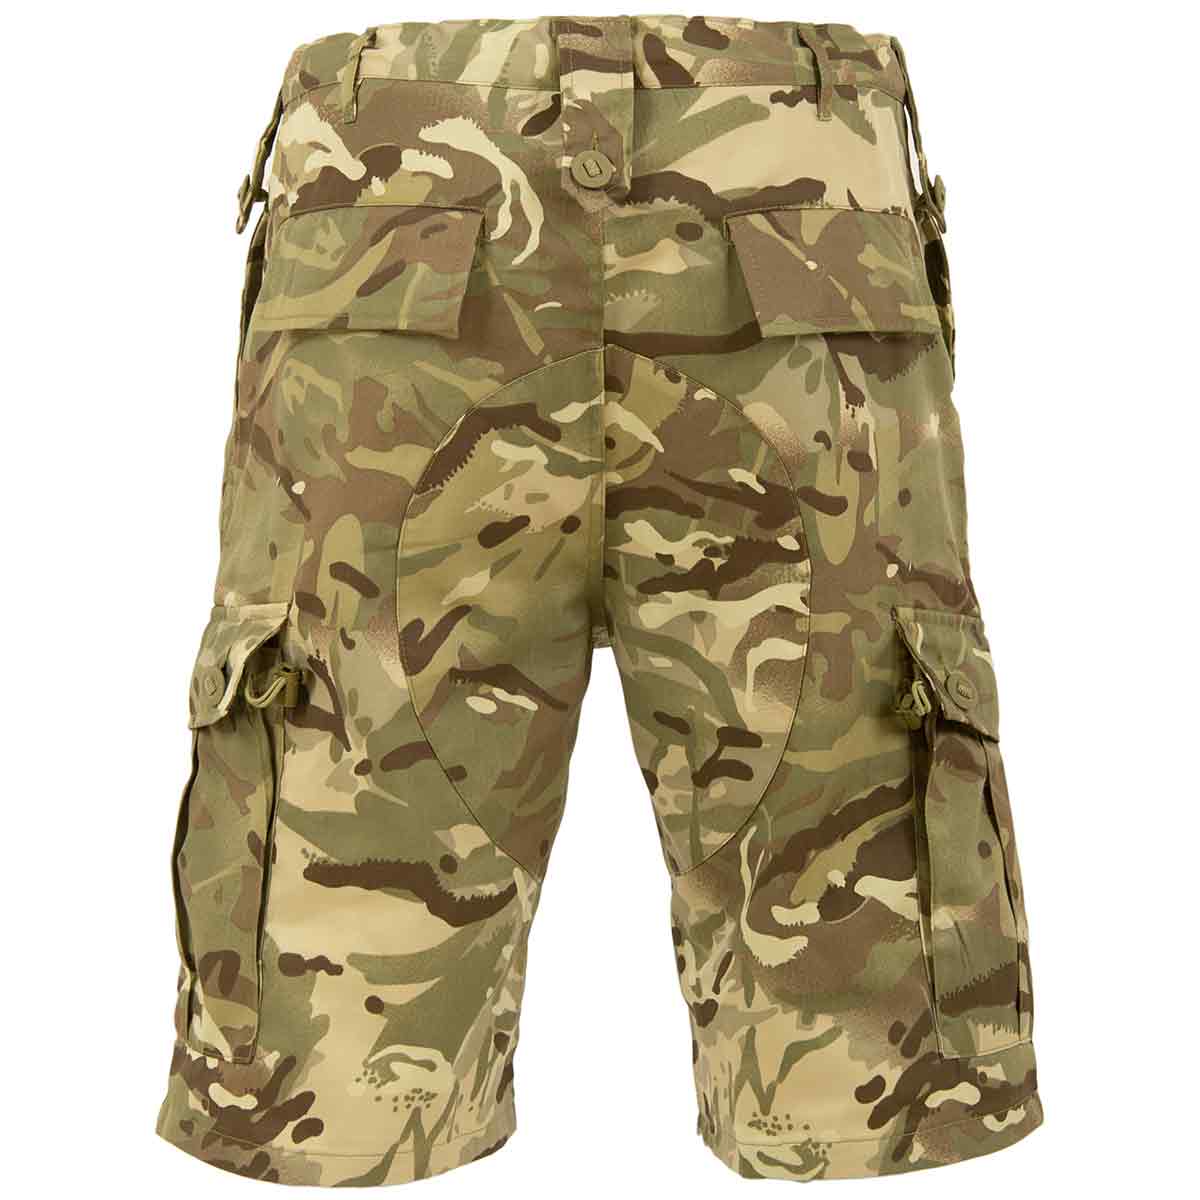 Highlander Elite British Army Style Camo Combat Shorts - John Bull Clothing